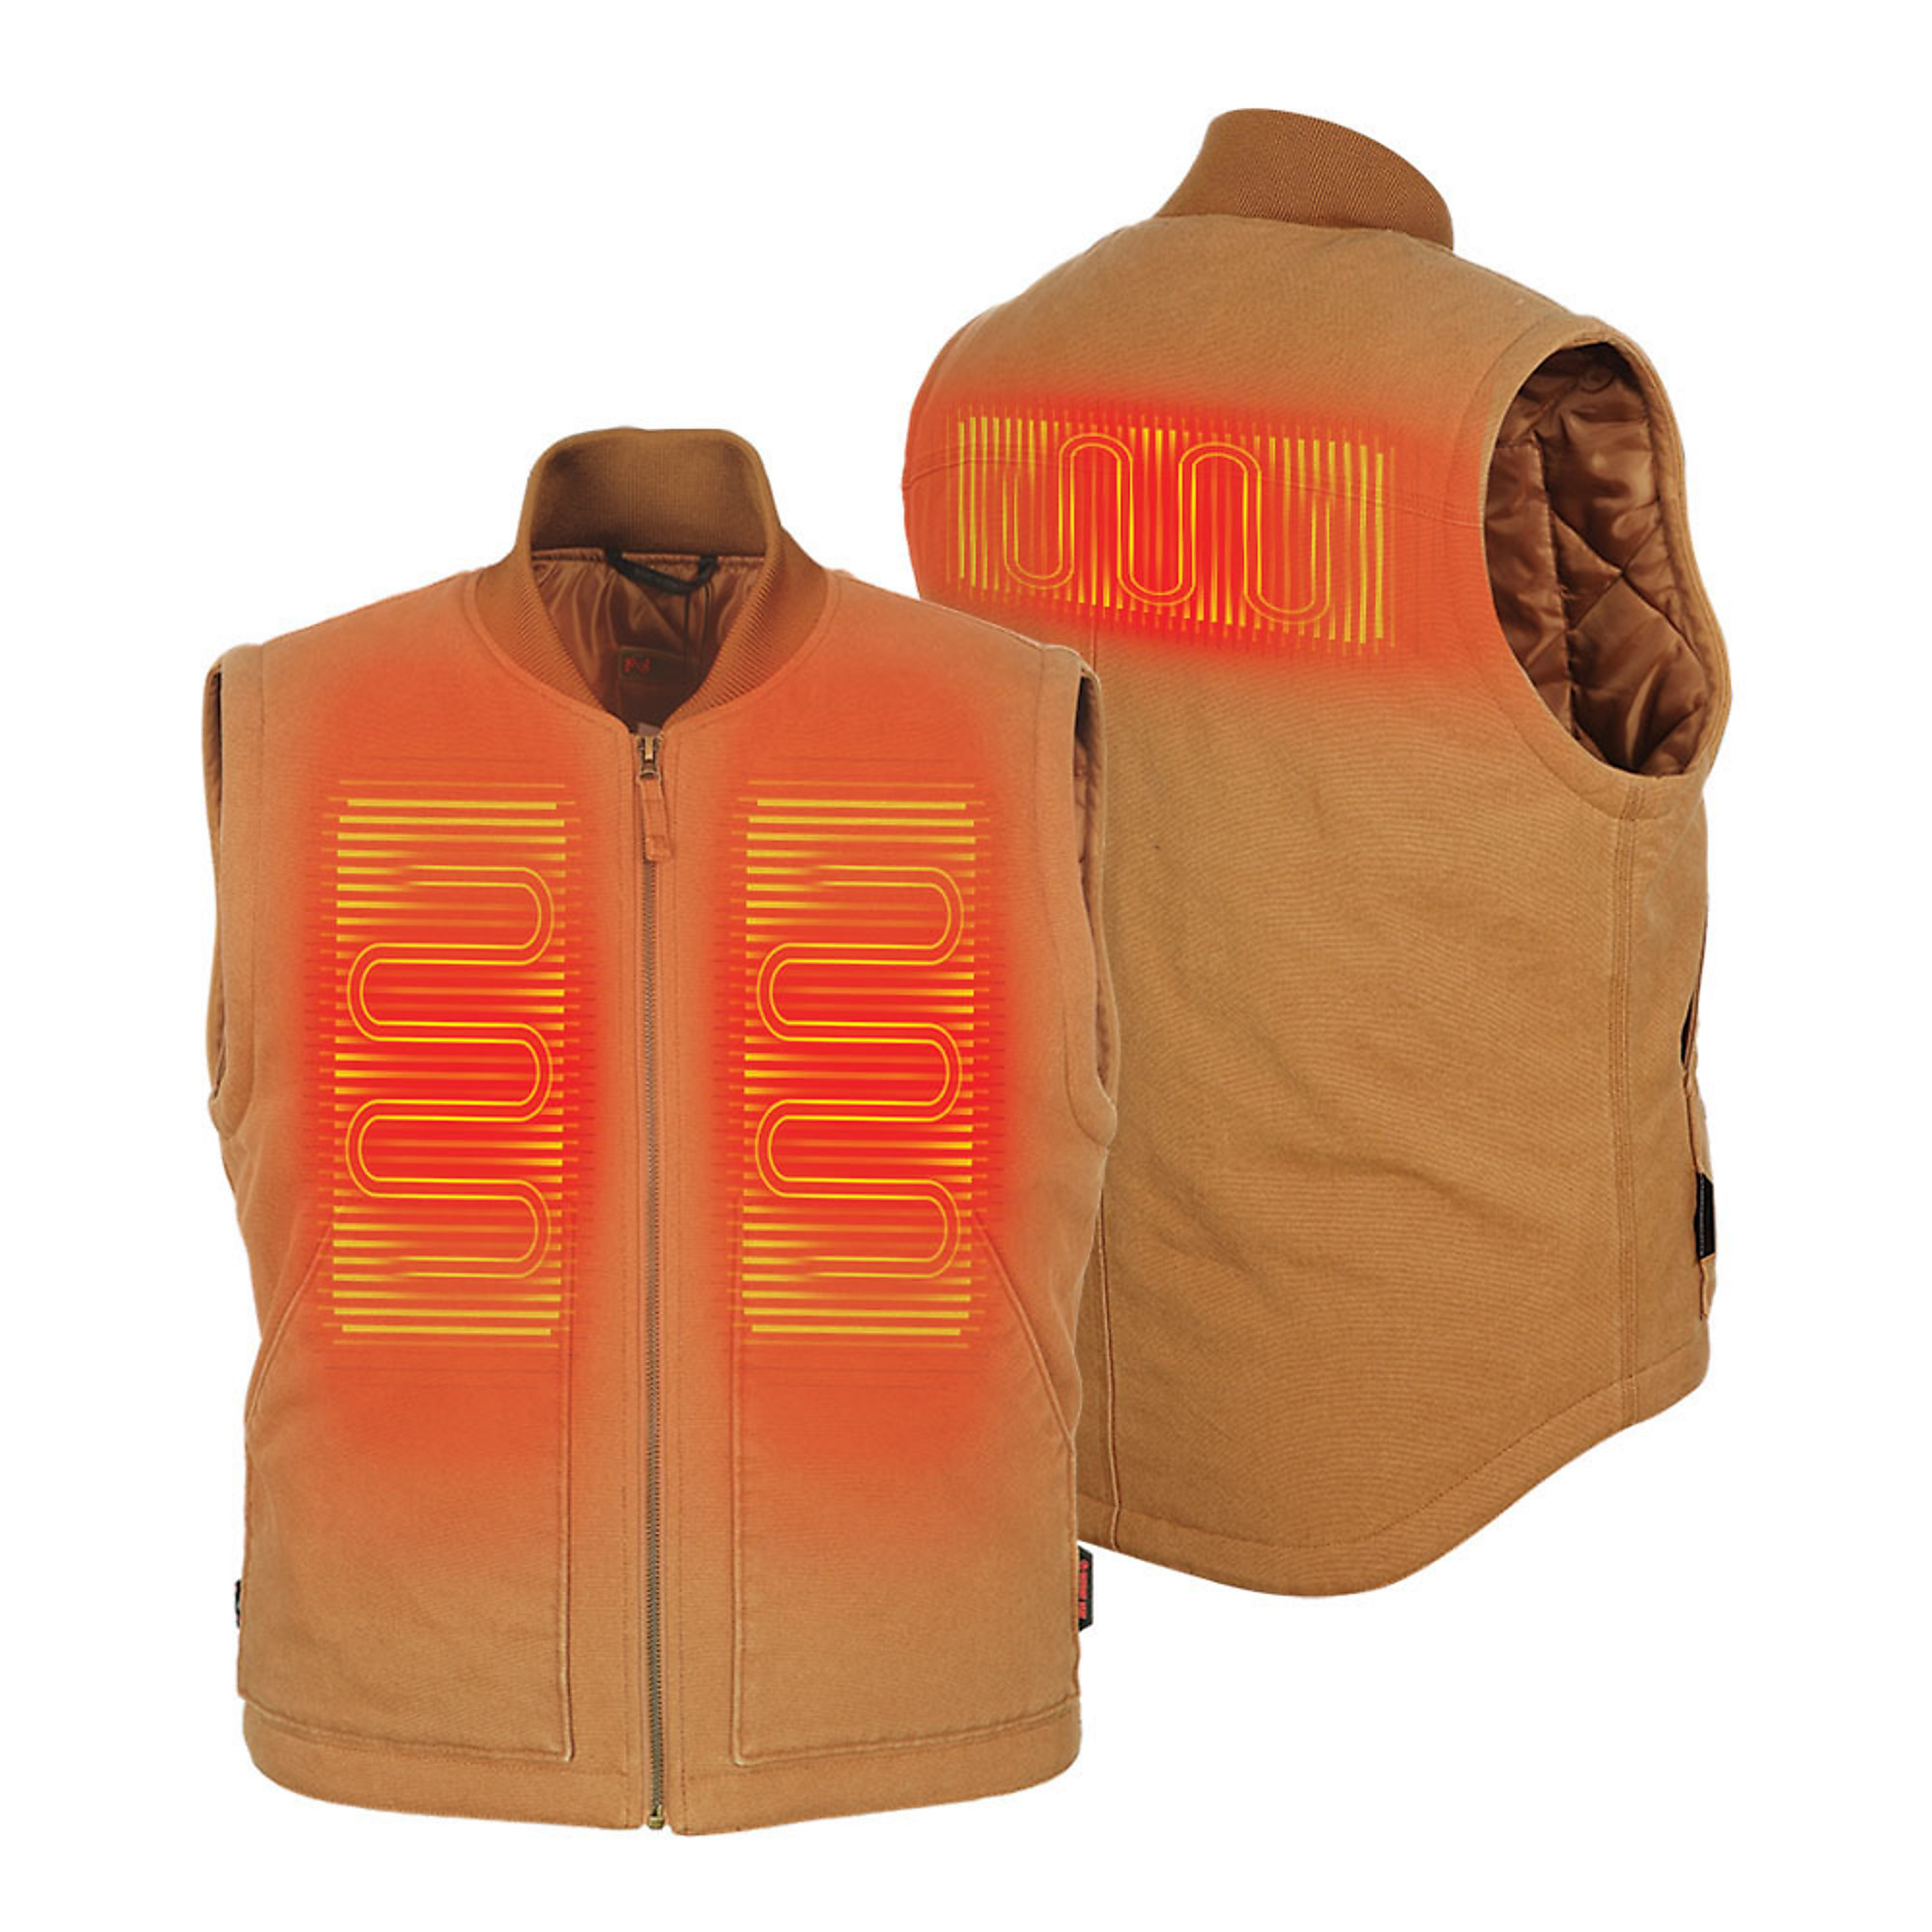 Fieldsheer, Men's Foreman 2.0 Vest with 7.4v Battery, Size 3XL, Color Tan, Model MWMV15130721